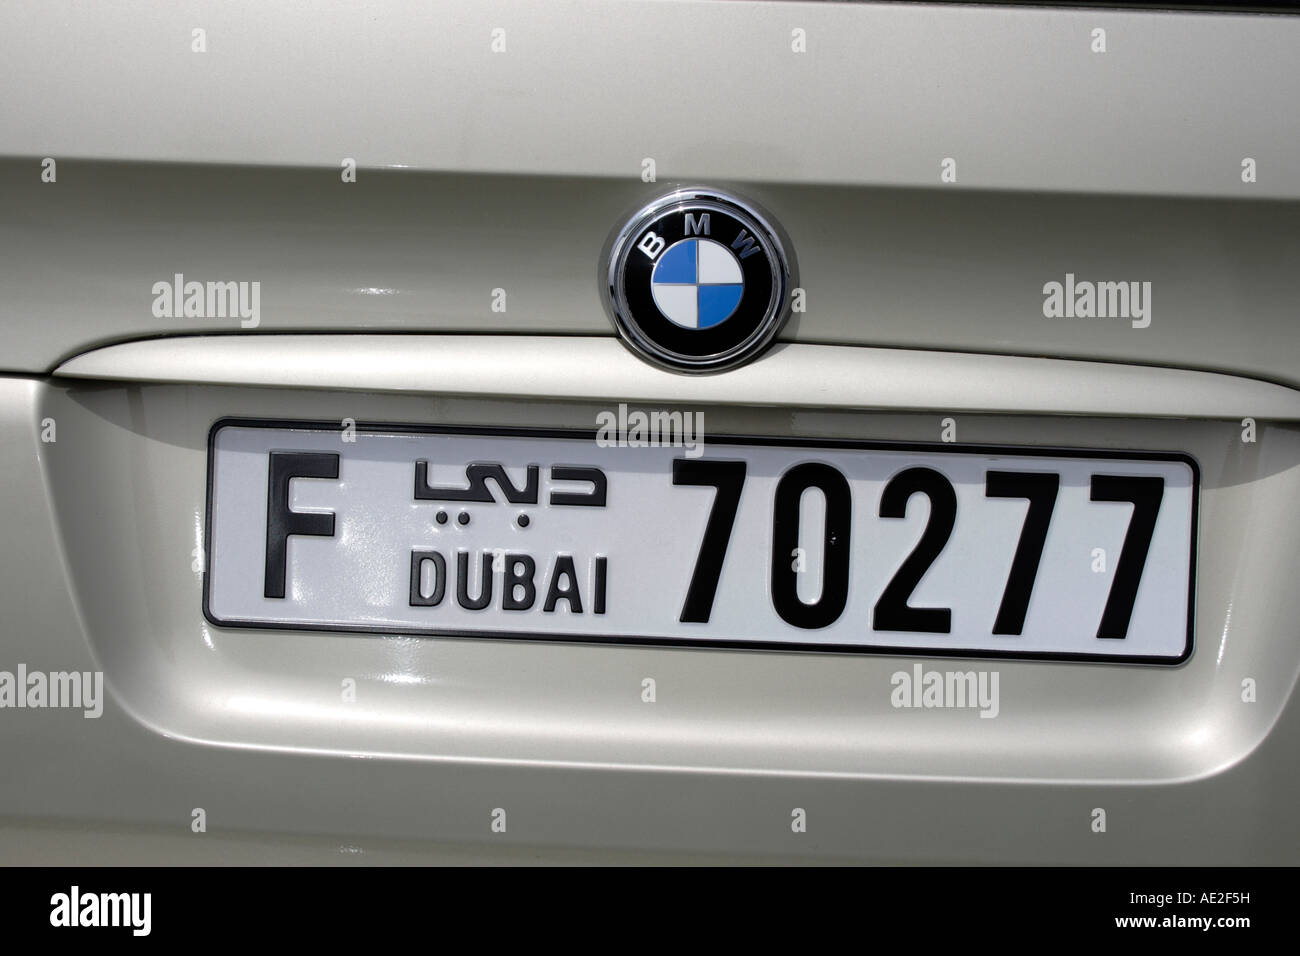 Kfz-Kennzeichen eines BMW Autos in Dubai, Vereinigte Arabische Emirate. Foto: Willy Matheisl Stockfoto